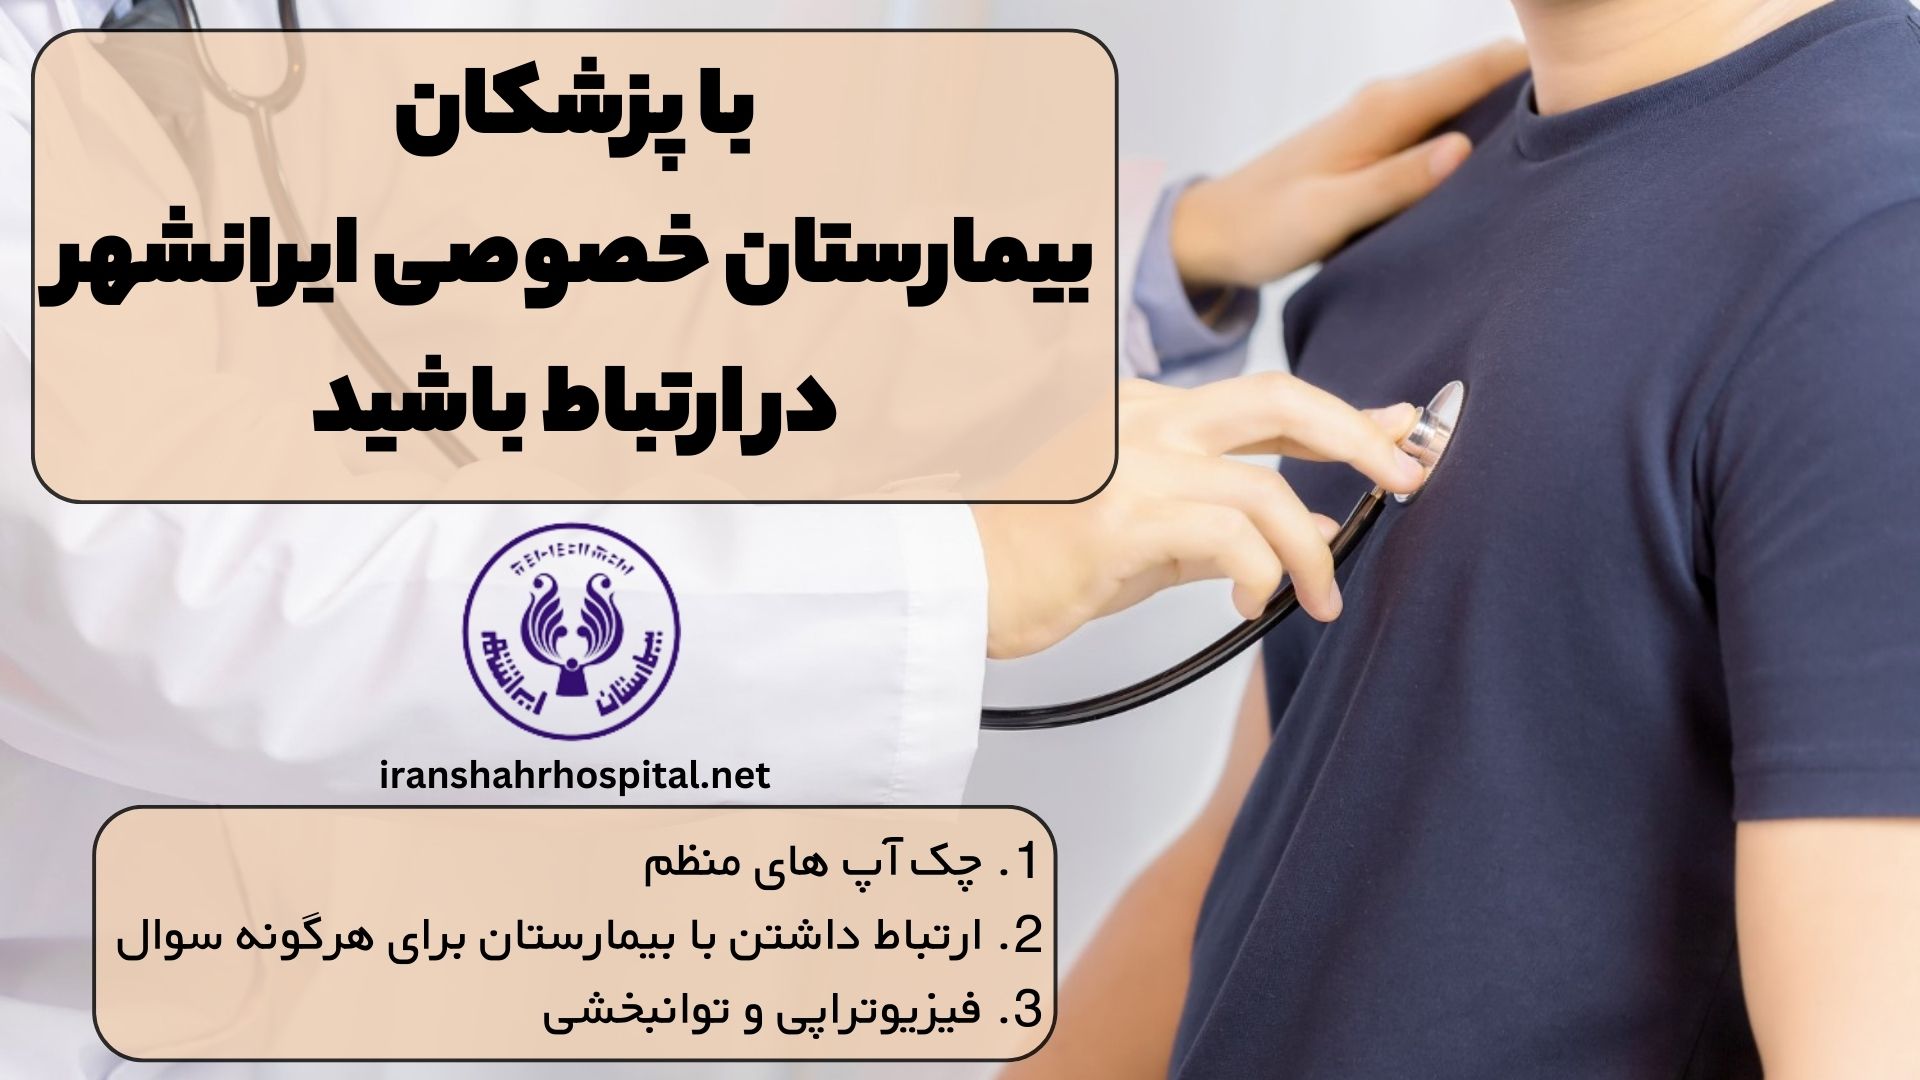 با پزشکان بیمارستان خصوصی ایرانشهر در ارتباط باشید